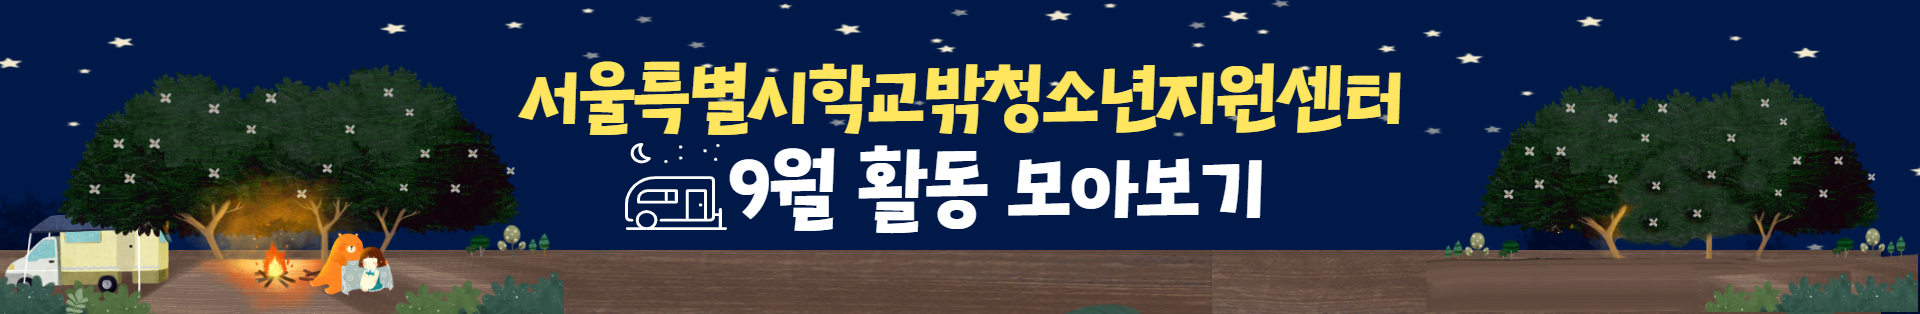 서울특별시학교밖청소년지원센터 9월 활동 모아보기